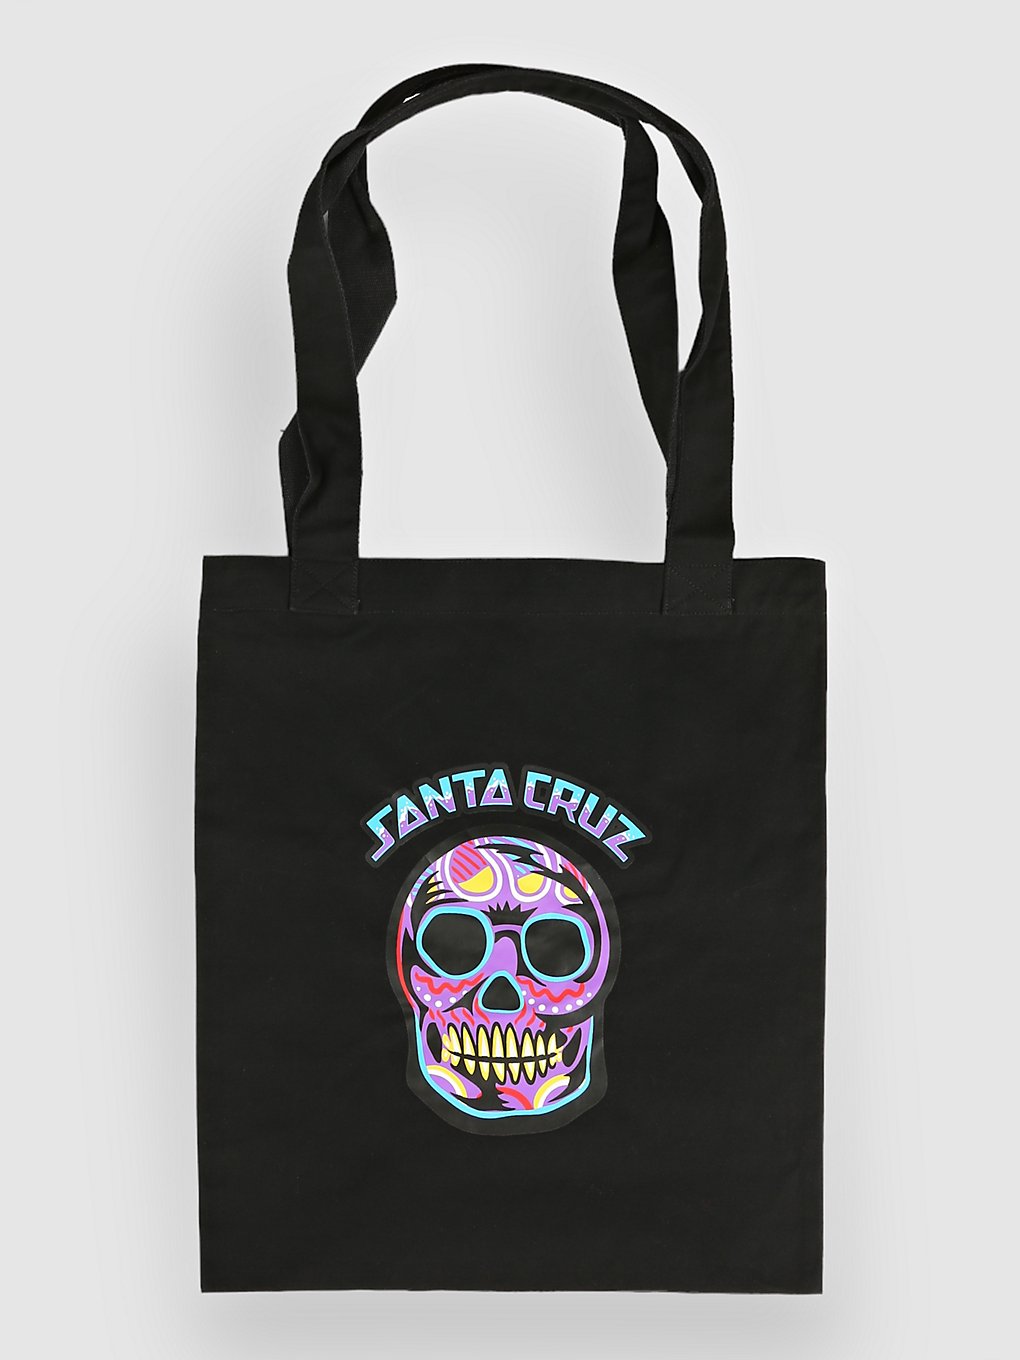 Santa Cruz Tote Handtasche black kaufen